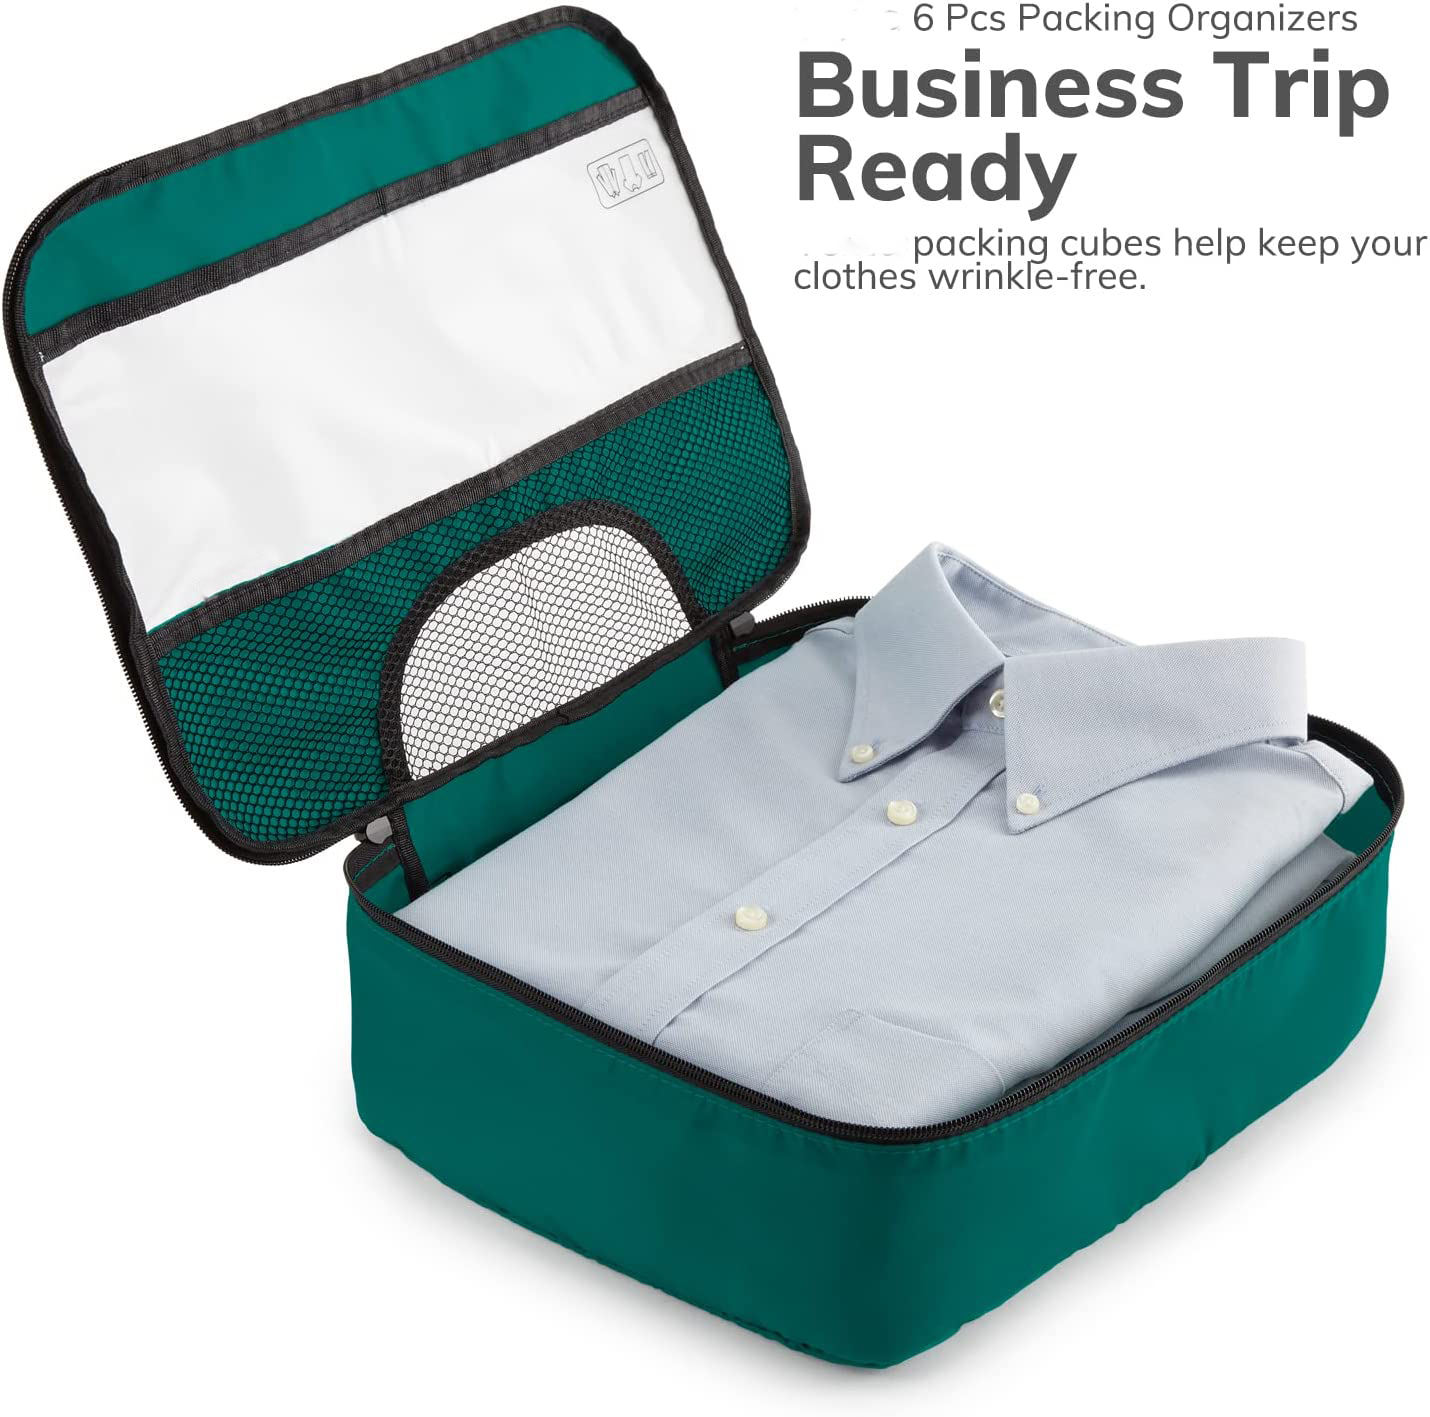 6 ensemble Cubes d'emballage voyage bagages organisateurs d'emballage avec sac à linge emballage Cubes organisateur sacs pour voyage